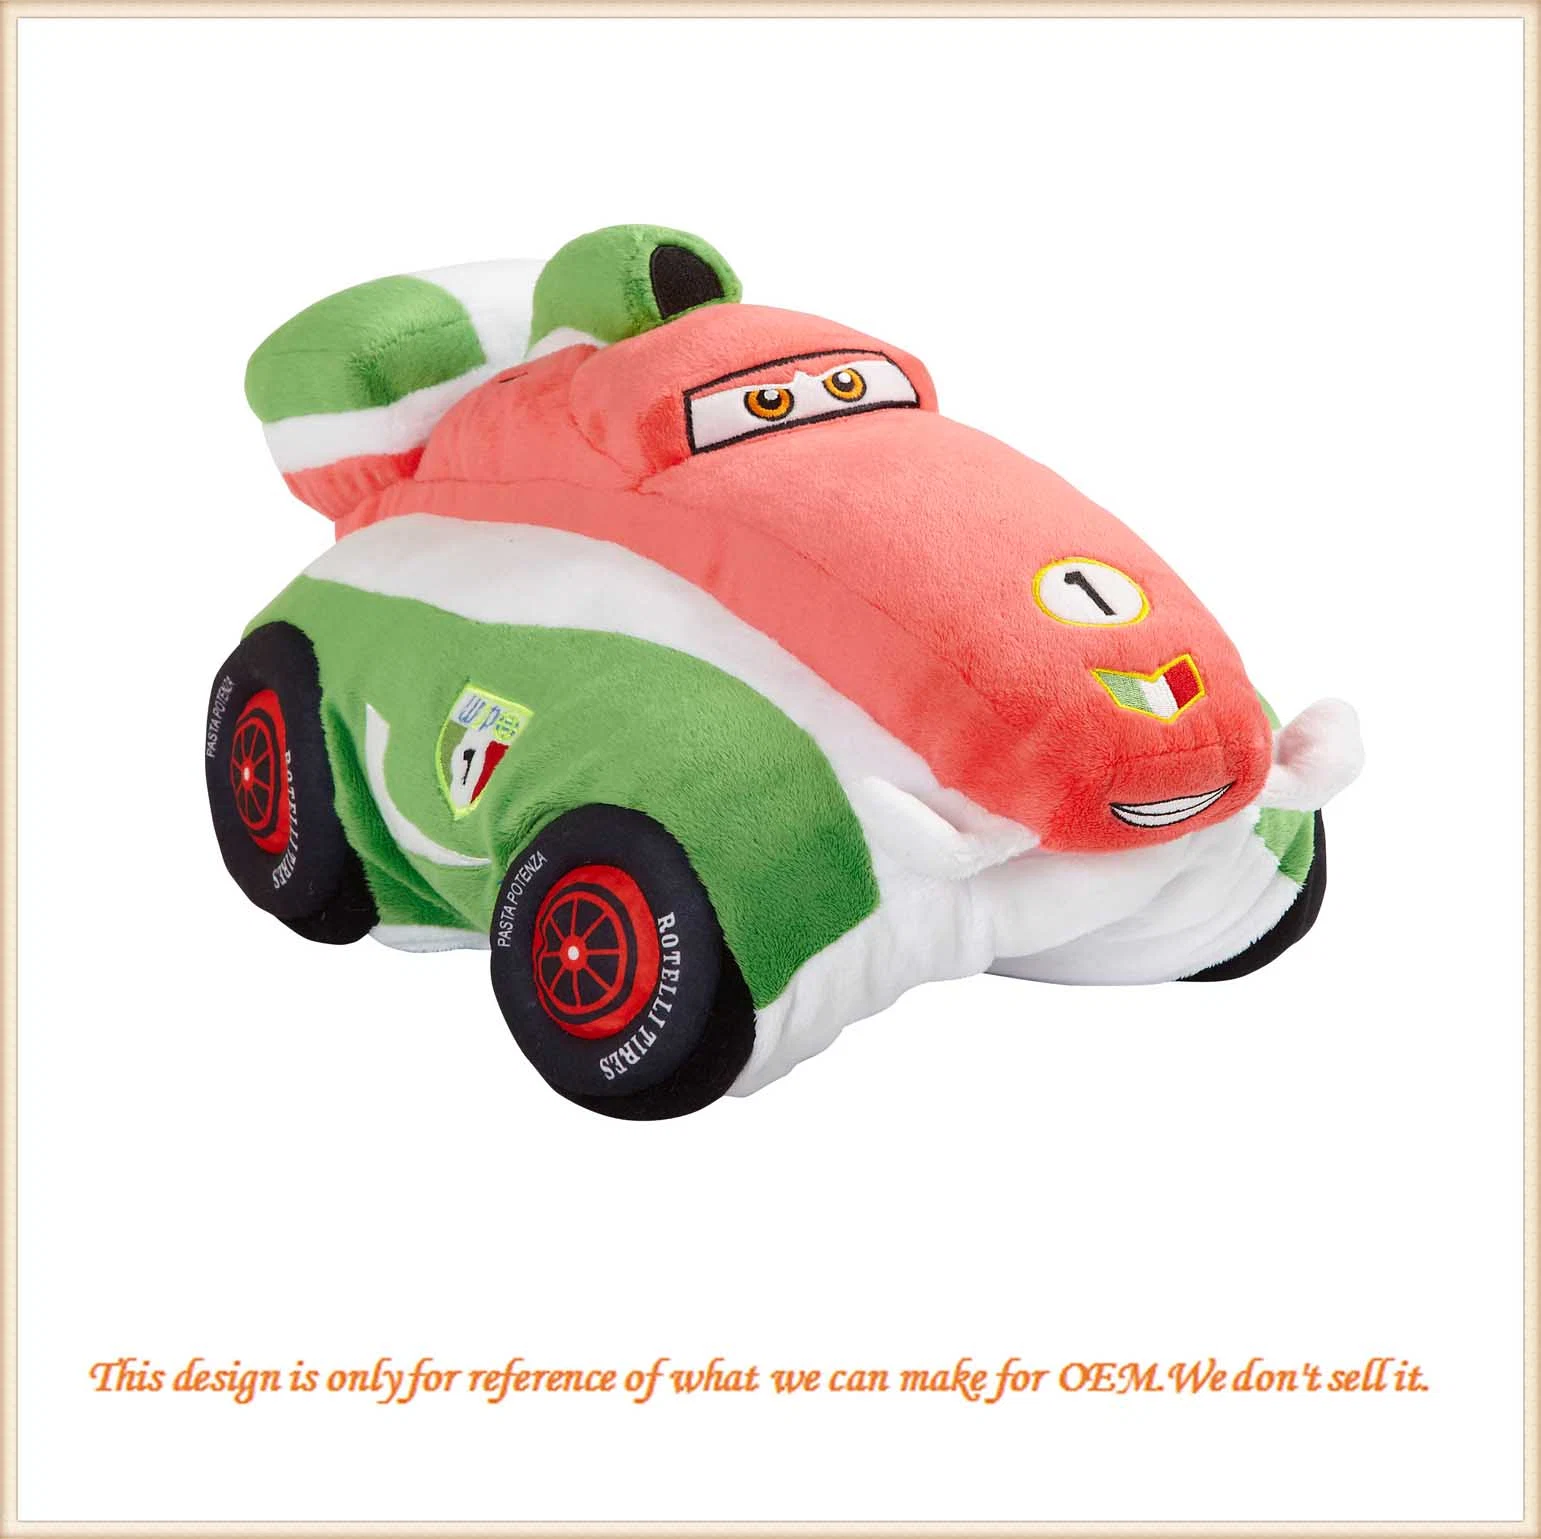 Soft Animal del vehículo alquiler de juguetes niños juguetes de peluche muñeca/.